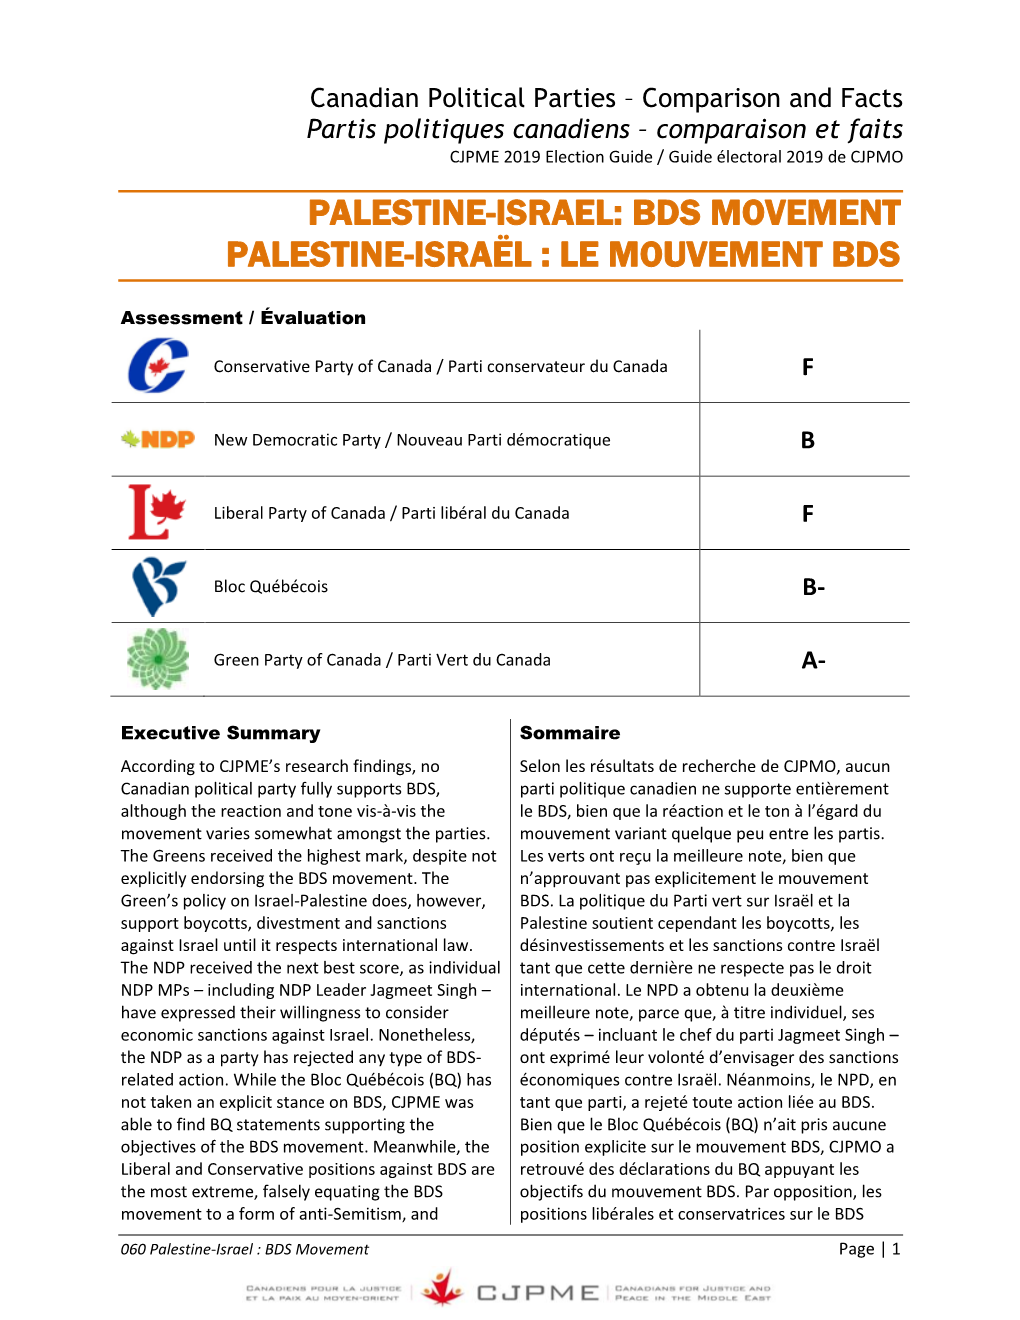 Bds Movement Palestine-Israël : Le Mouvement Bds